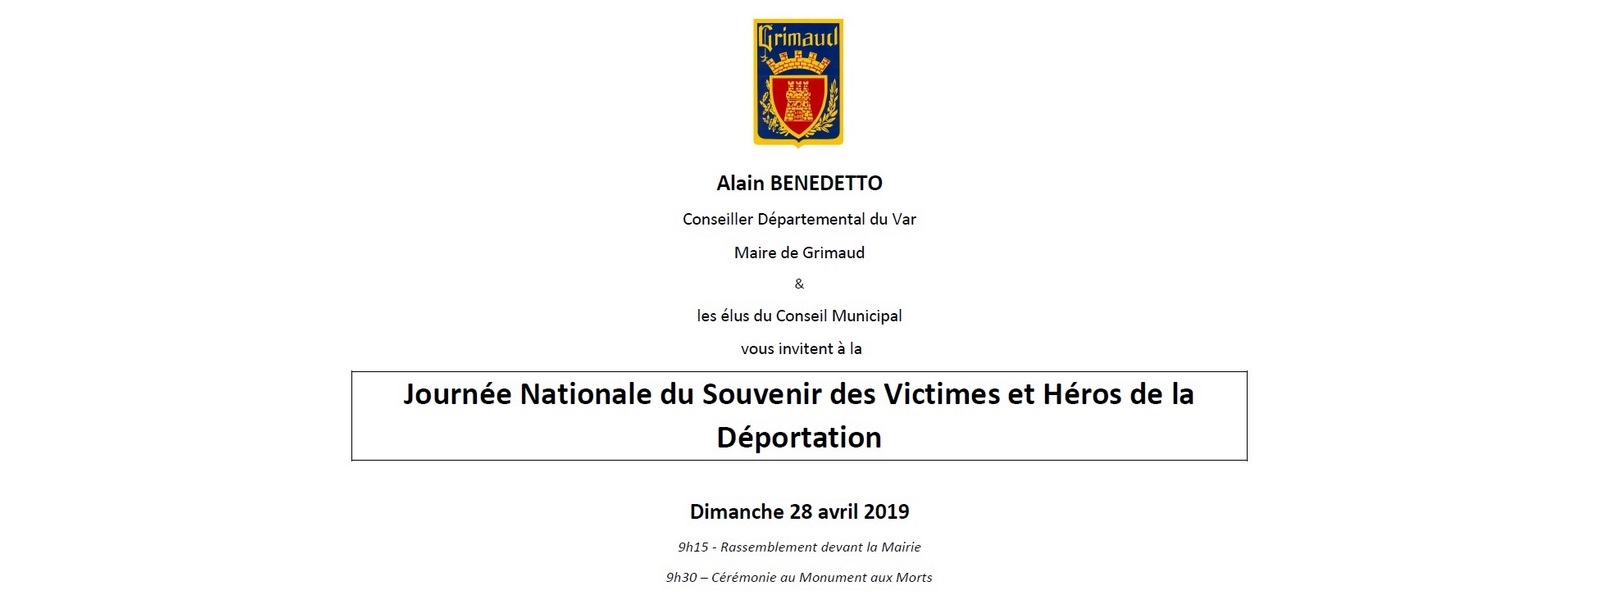 28 avril 2019 : Journée Nationale du Souvenir des Victimes et Héros de la Déportation 